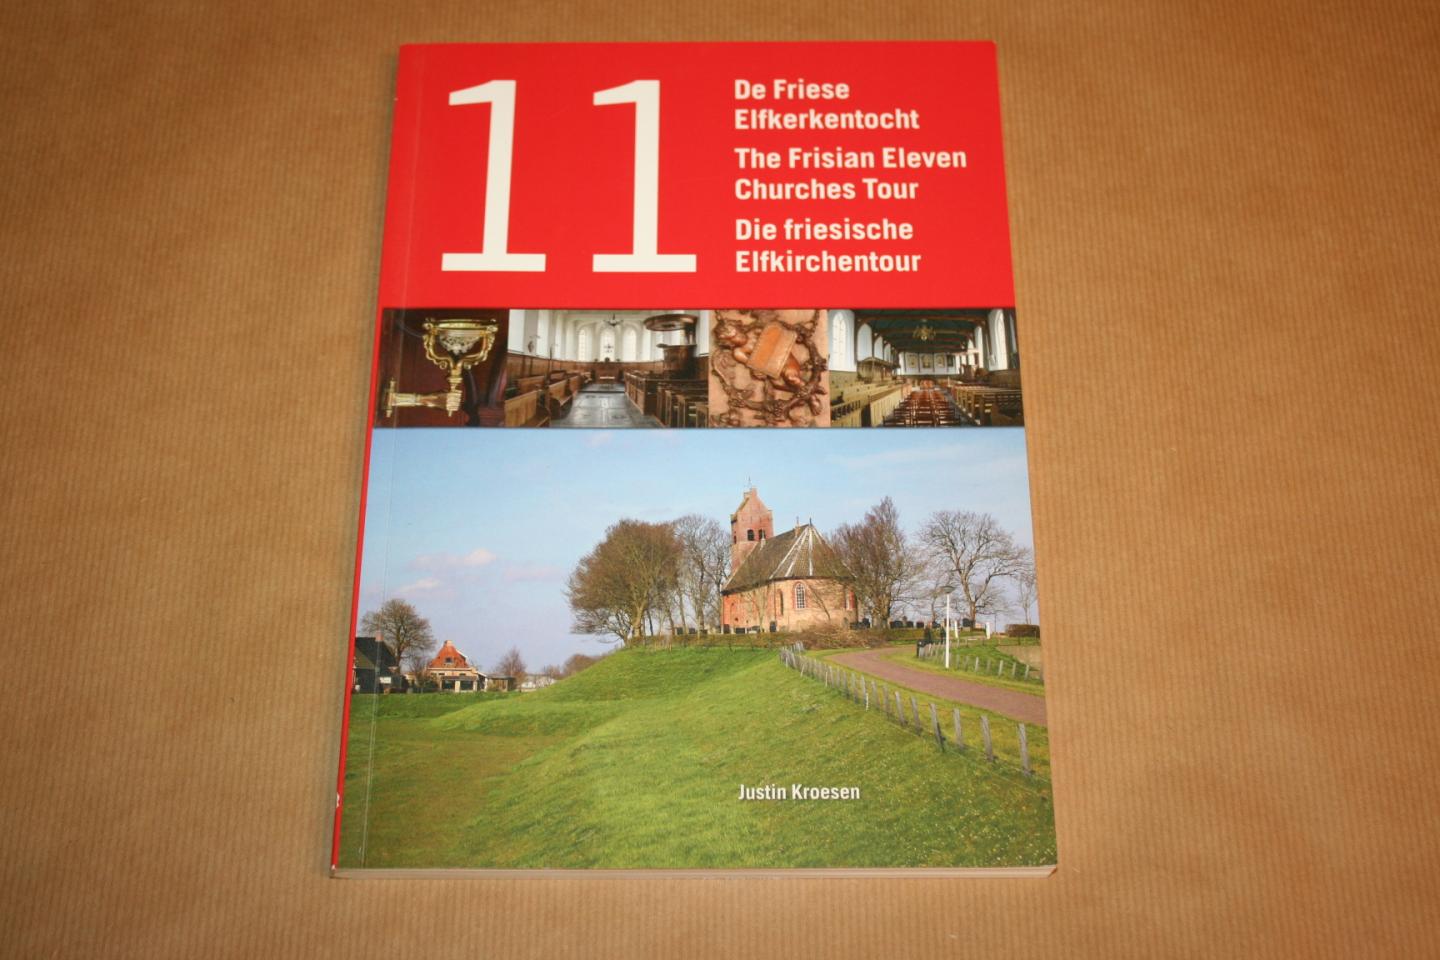 Kroesen, J.E.A. and Steensma, R - 11- De Friese elfkerkentocht - The Frisian eleven churches tour - De friesische Elfkirchentour